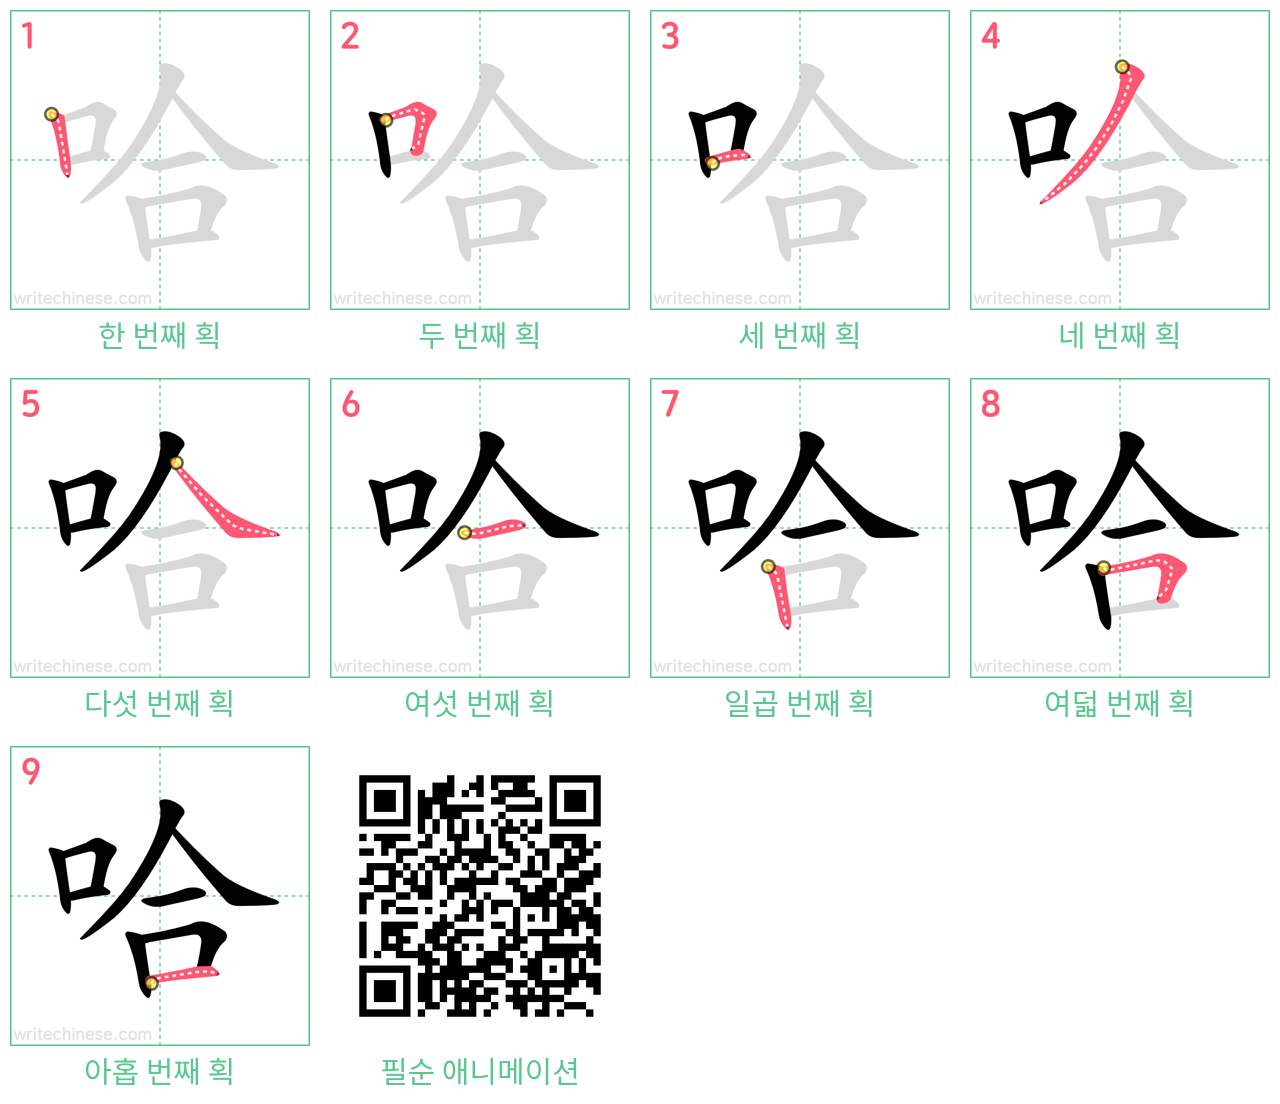 哈 step-by-step stroke order diagrams